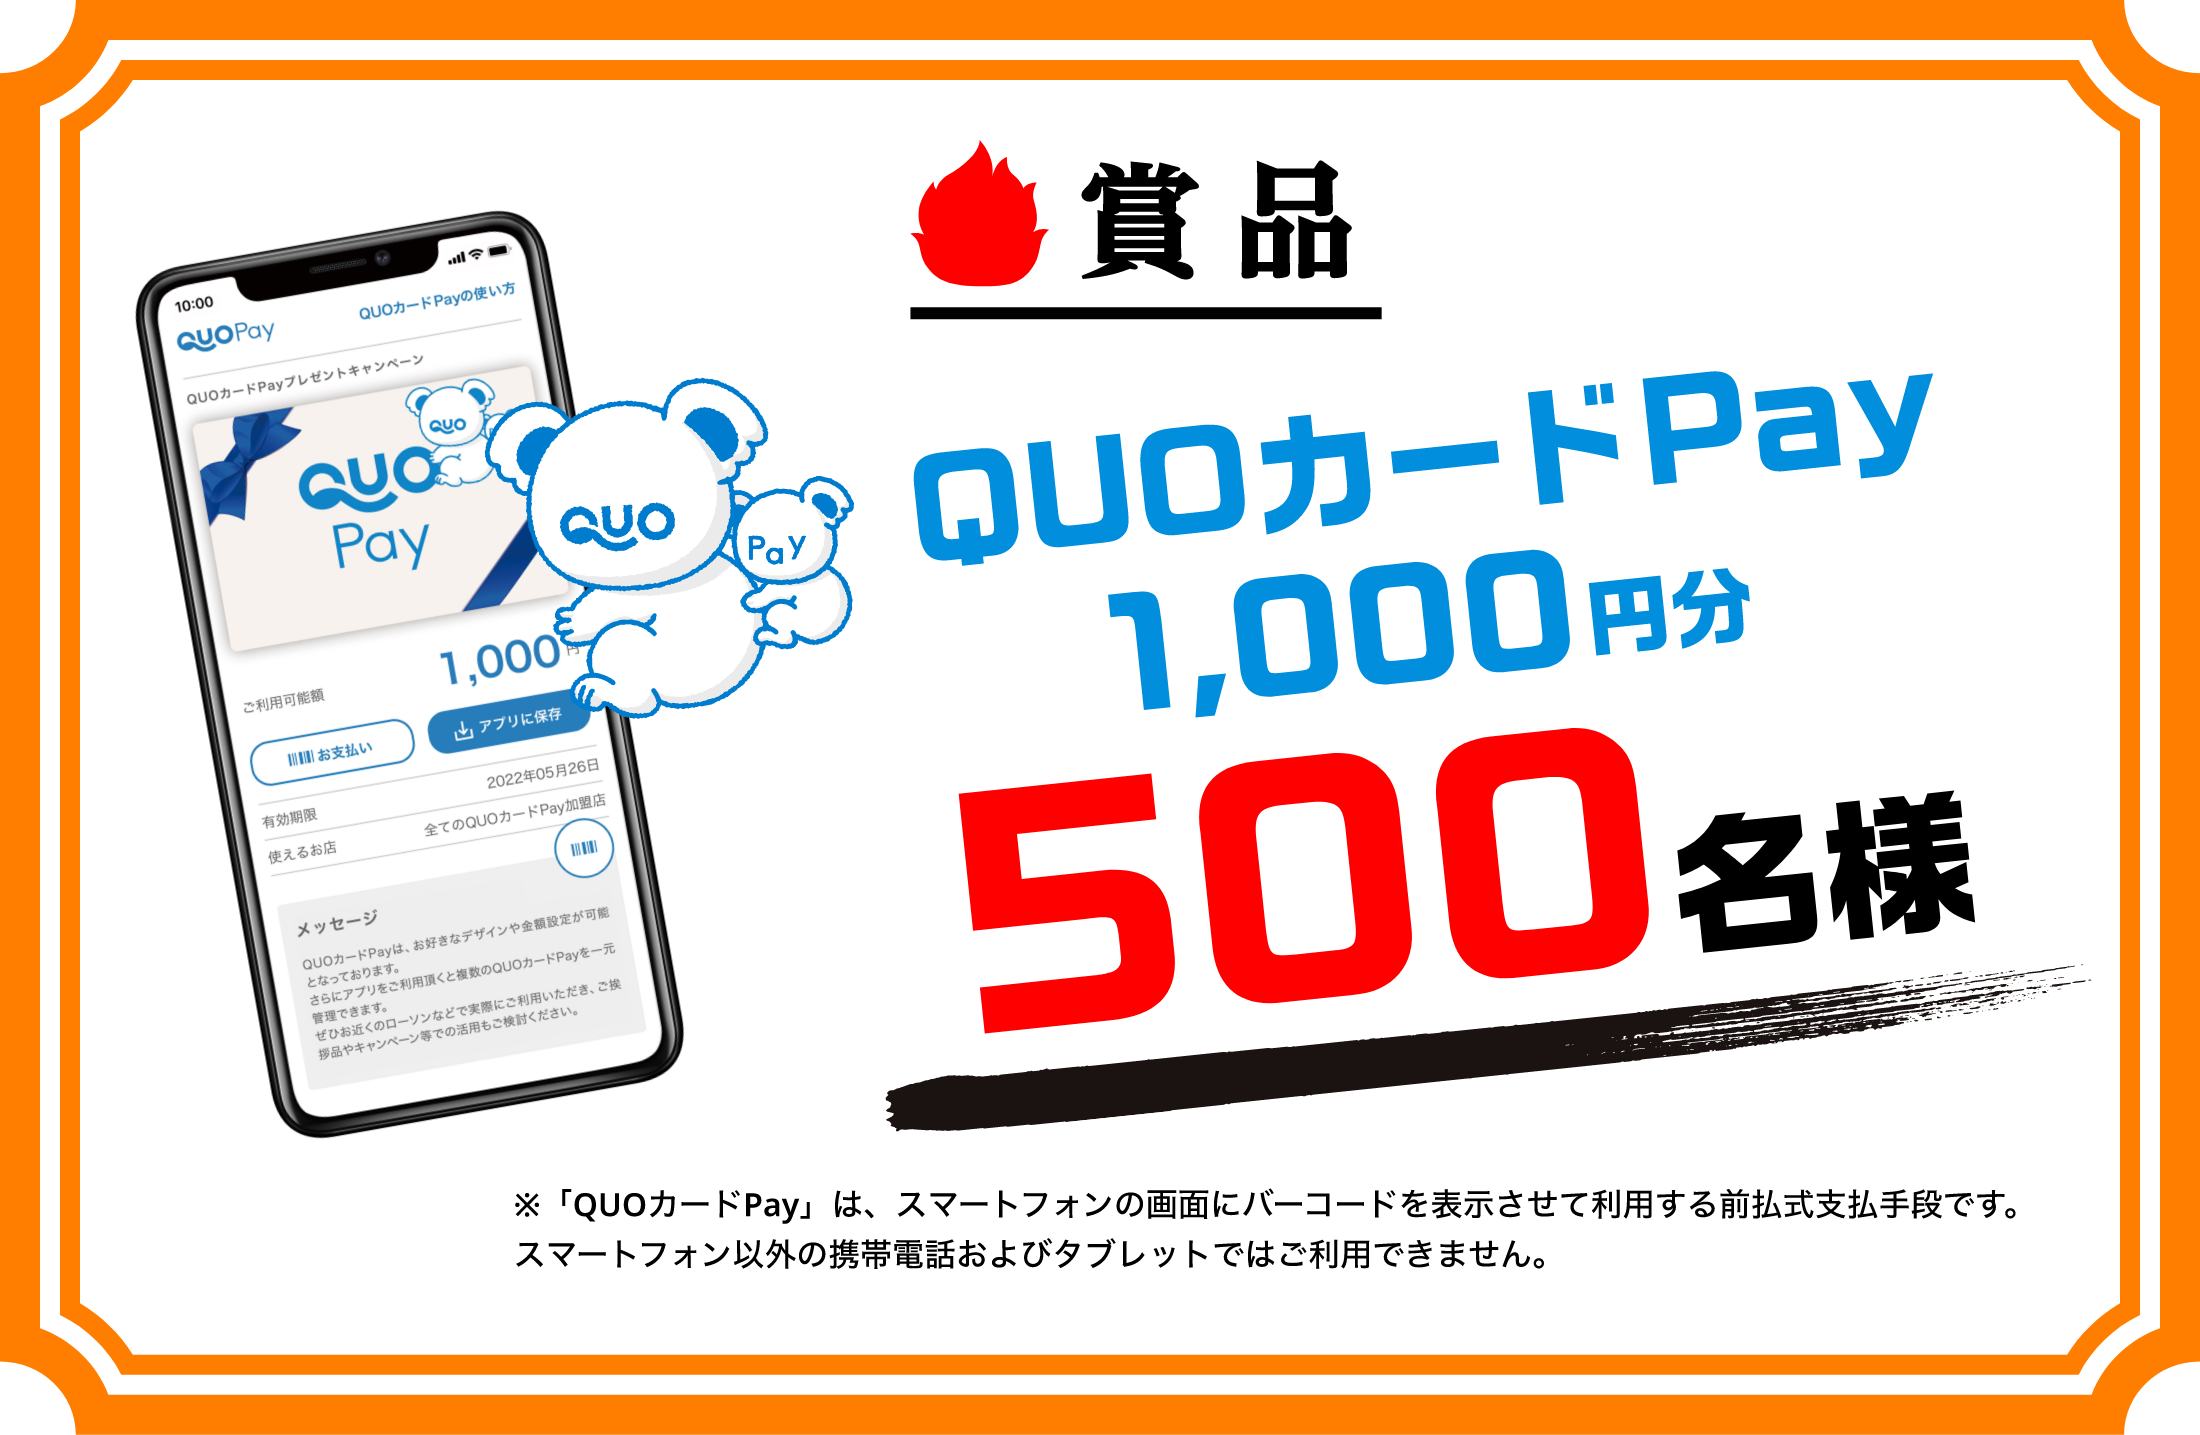 賞品 QUOカードPay1,000円分 500名様 ※「QUOカードPay」は、スマートフォンの画面にバーコードを表示させて利用する前払式支払手段です。スマートフォン以外の携帯電話およびタブレットではご利用できません。